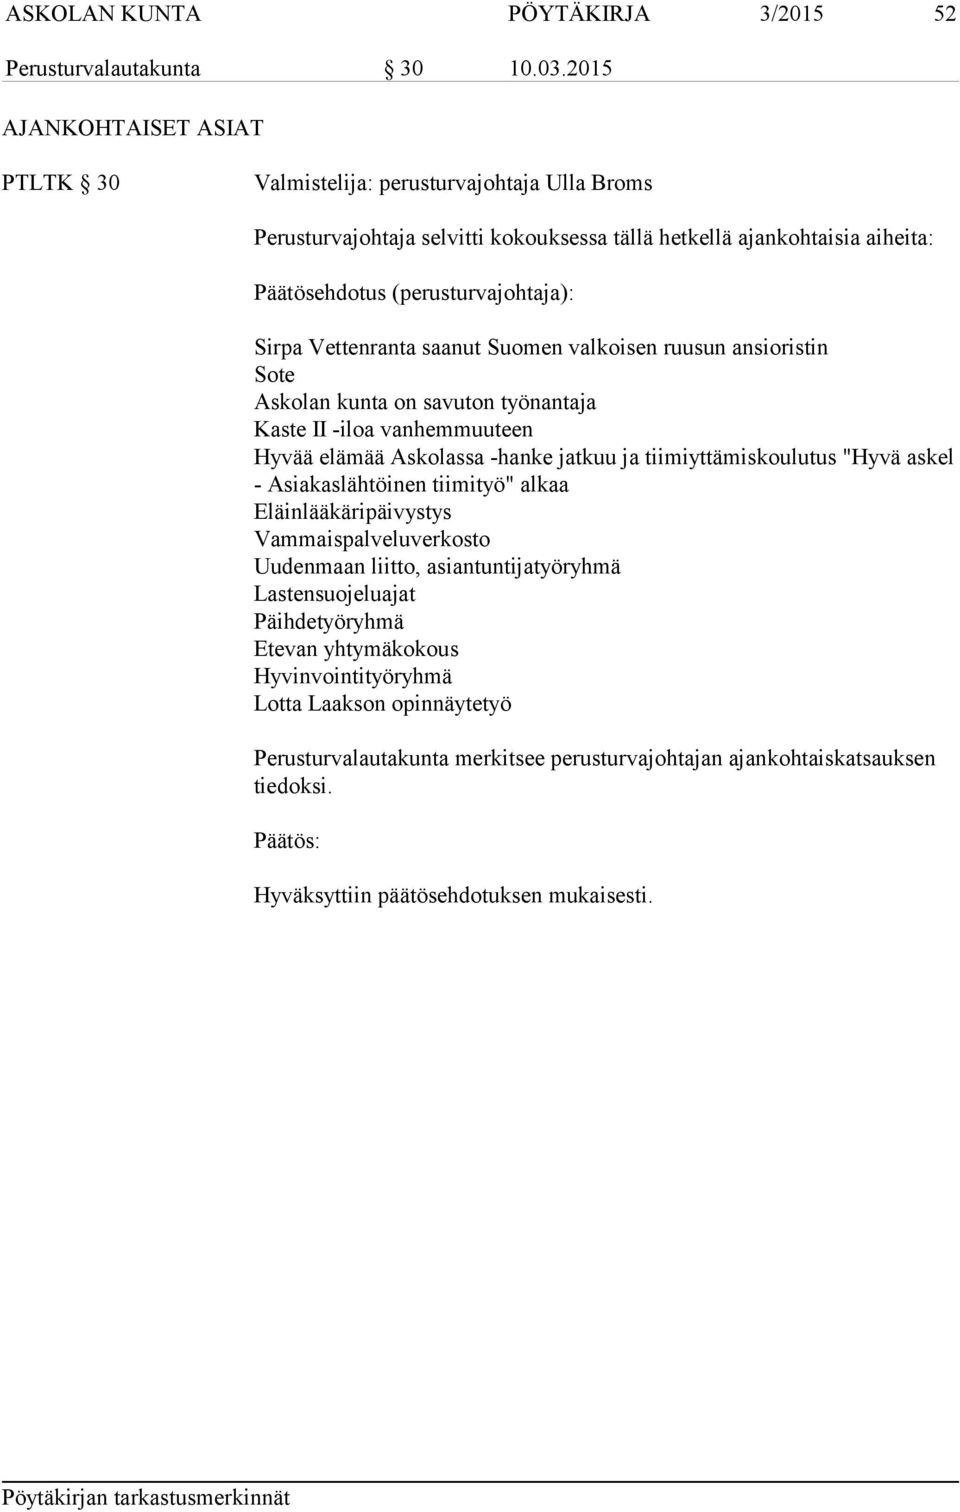 Vettenranta saanut Suomen valkoisen ruusun ansioristin Sote Askolan kunta on savuton työnantaja Kaste II -iloa vanhemmuuteen Hyvää elämää Askolassa -hanke jatkuu ja tiimiyttämiskoulutus "Hyvä askel -